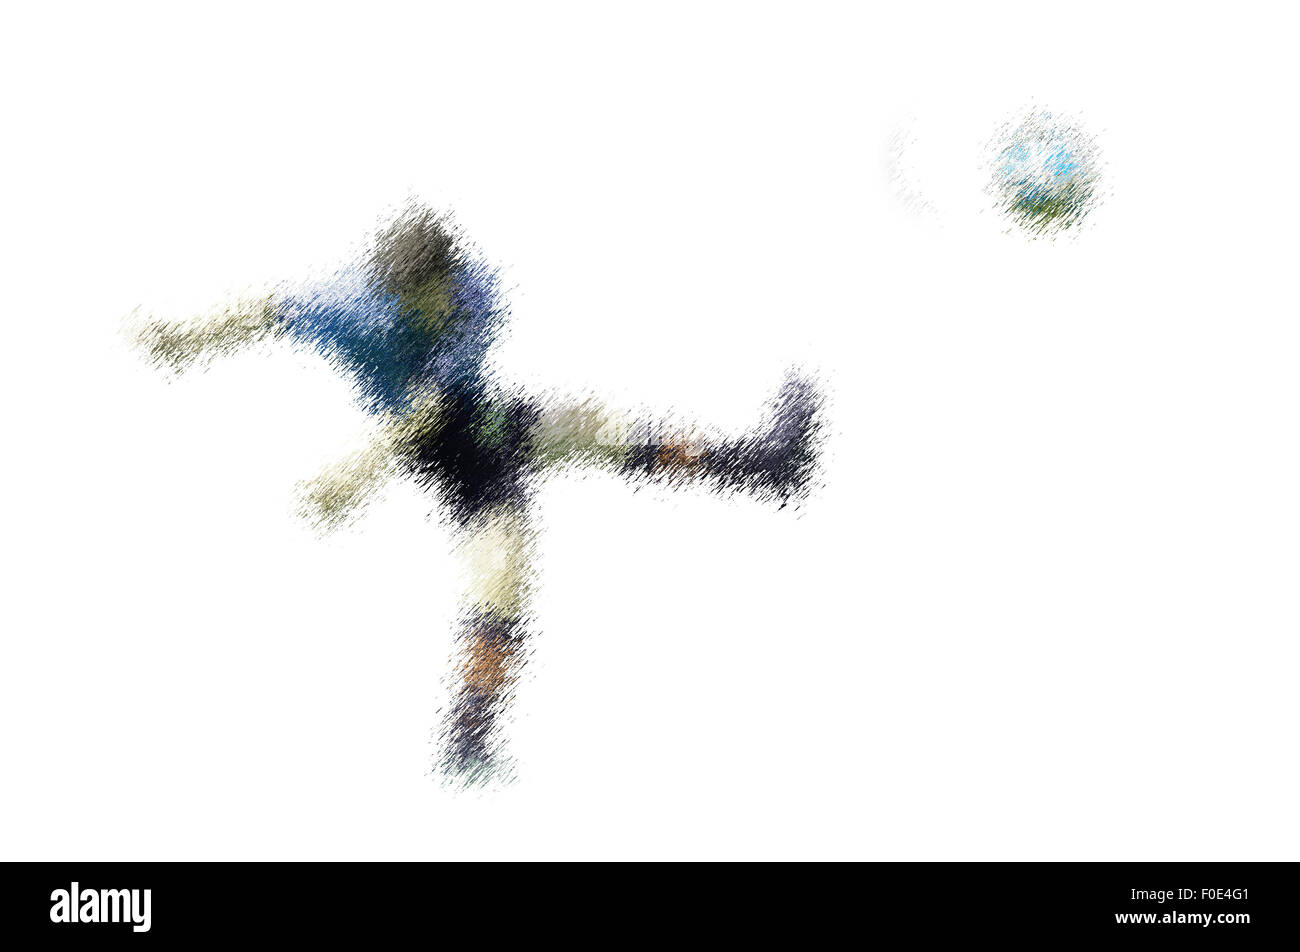 Lettore Blu germogli. Abstract illustrazione digitale di soccer football giocatori, gli adolescenti circa quindici anni, in azione isolata Foto Stock